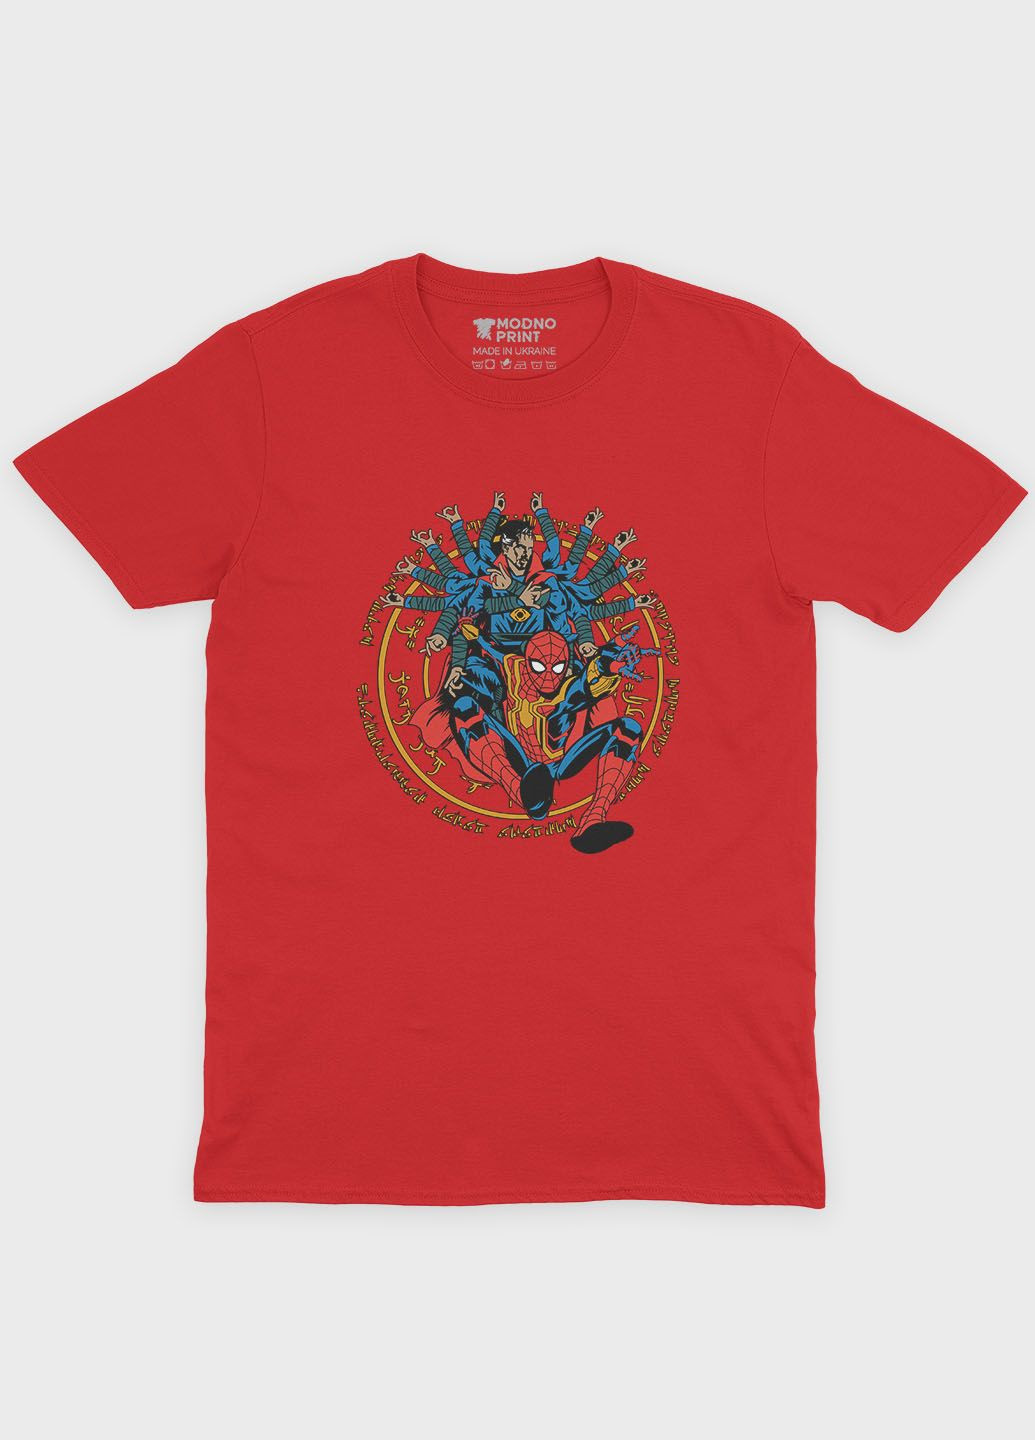 Красная демисезонная футболка для мальчика с принтом супергероя - человек-паук (ts001-1-sre-006-014-010-b) Modno